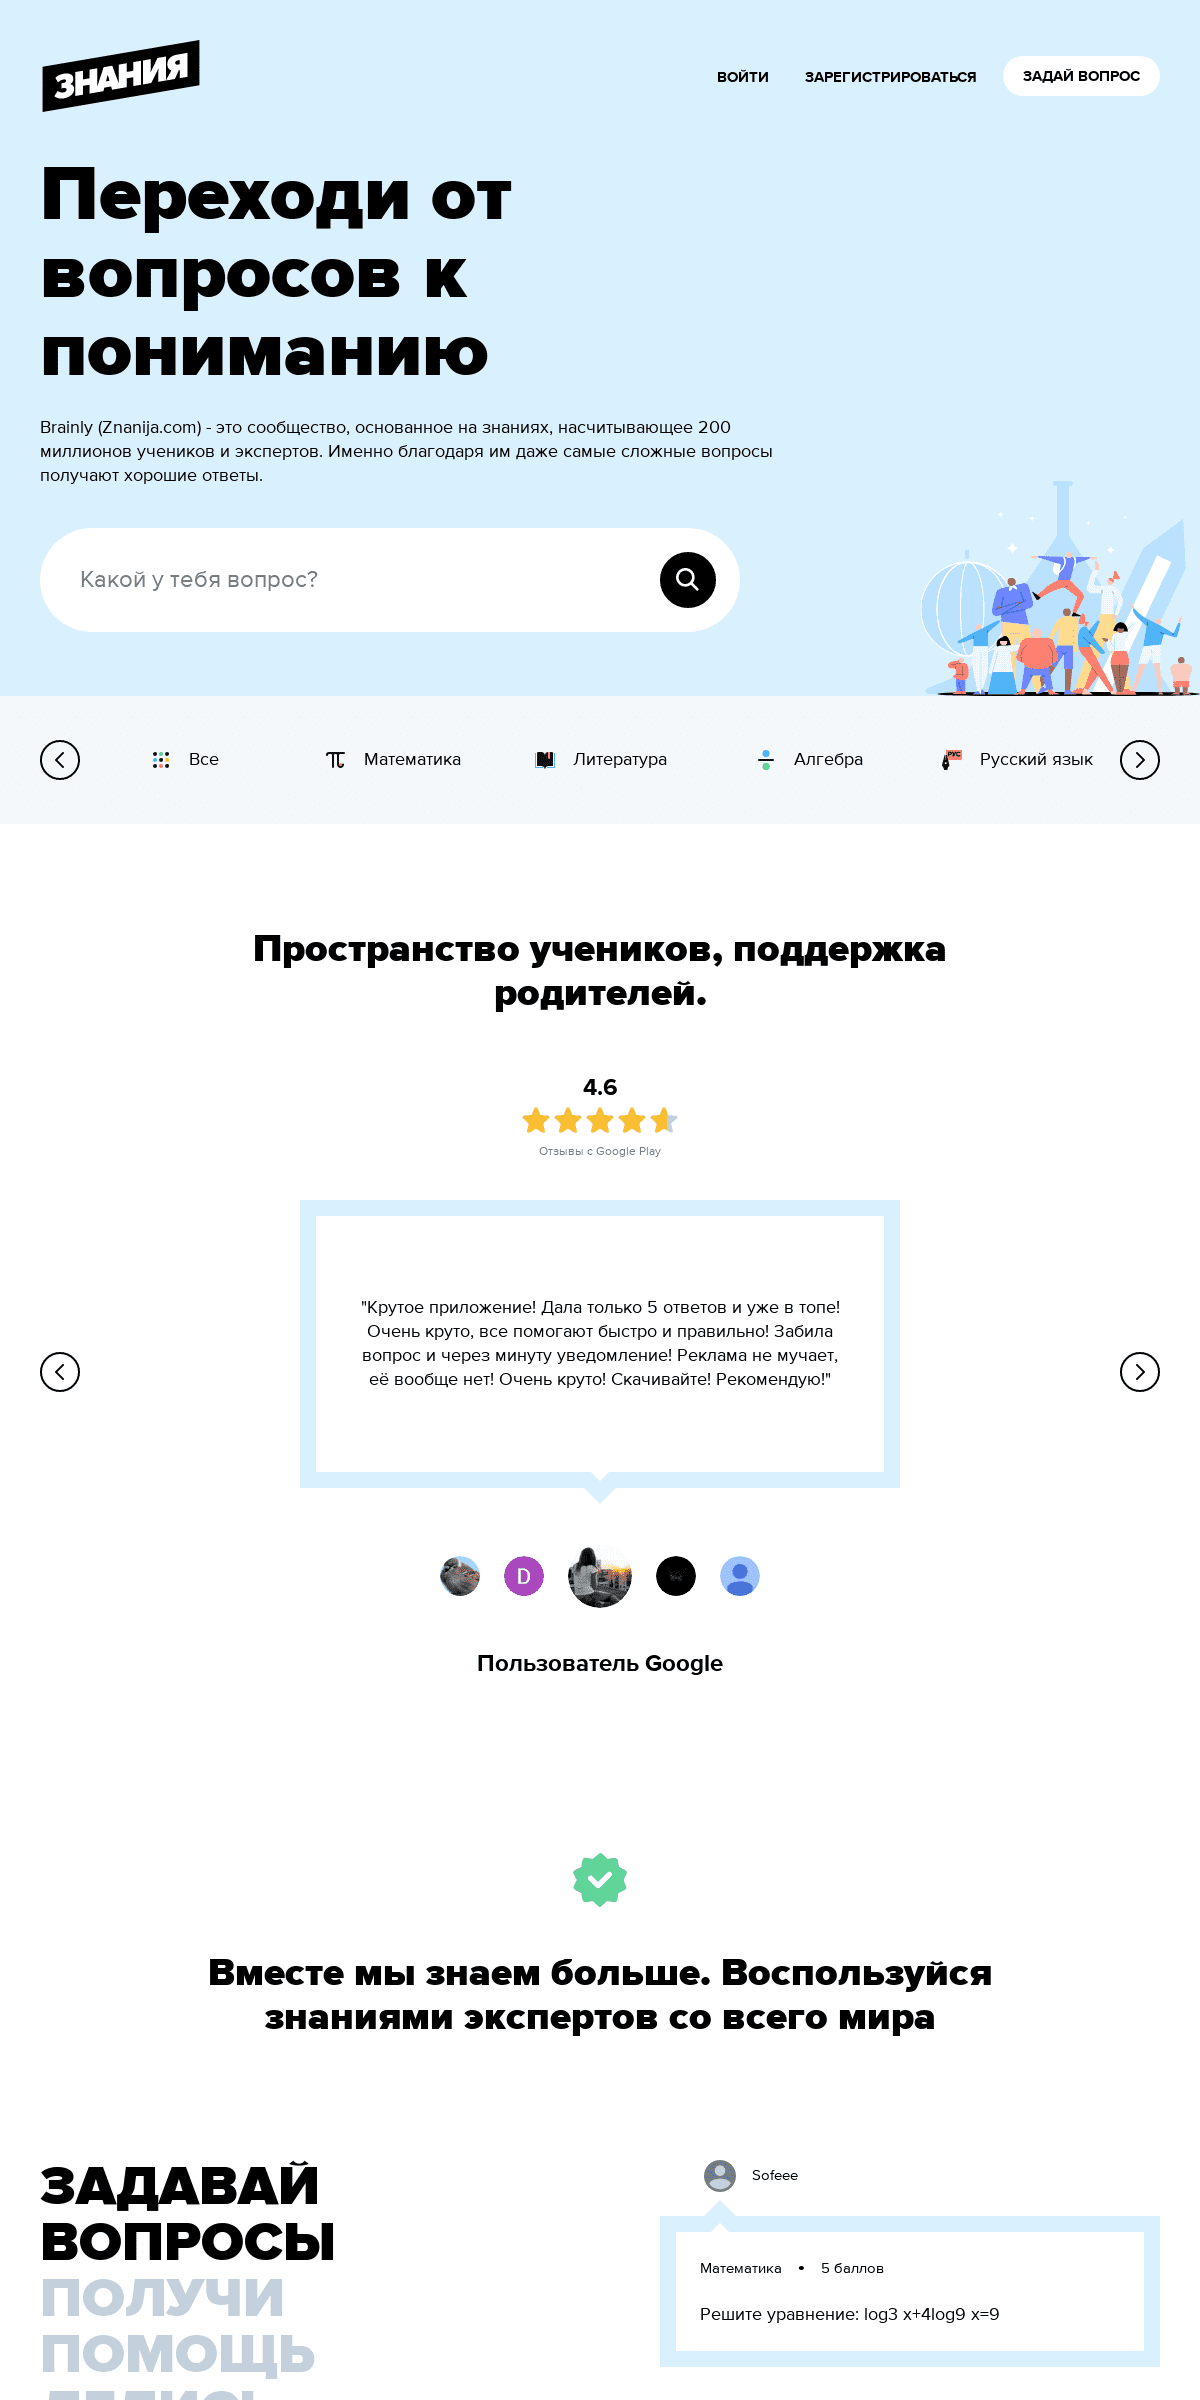 A complete backup of znanija.com